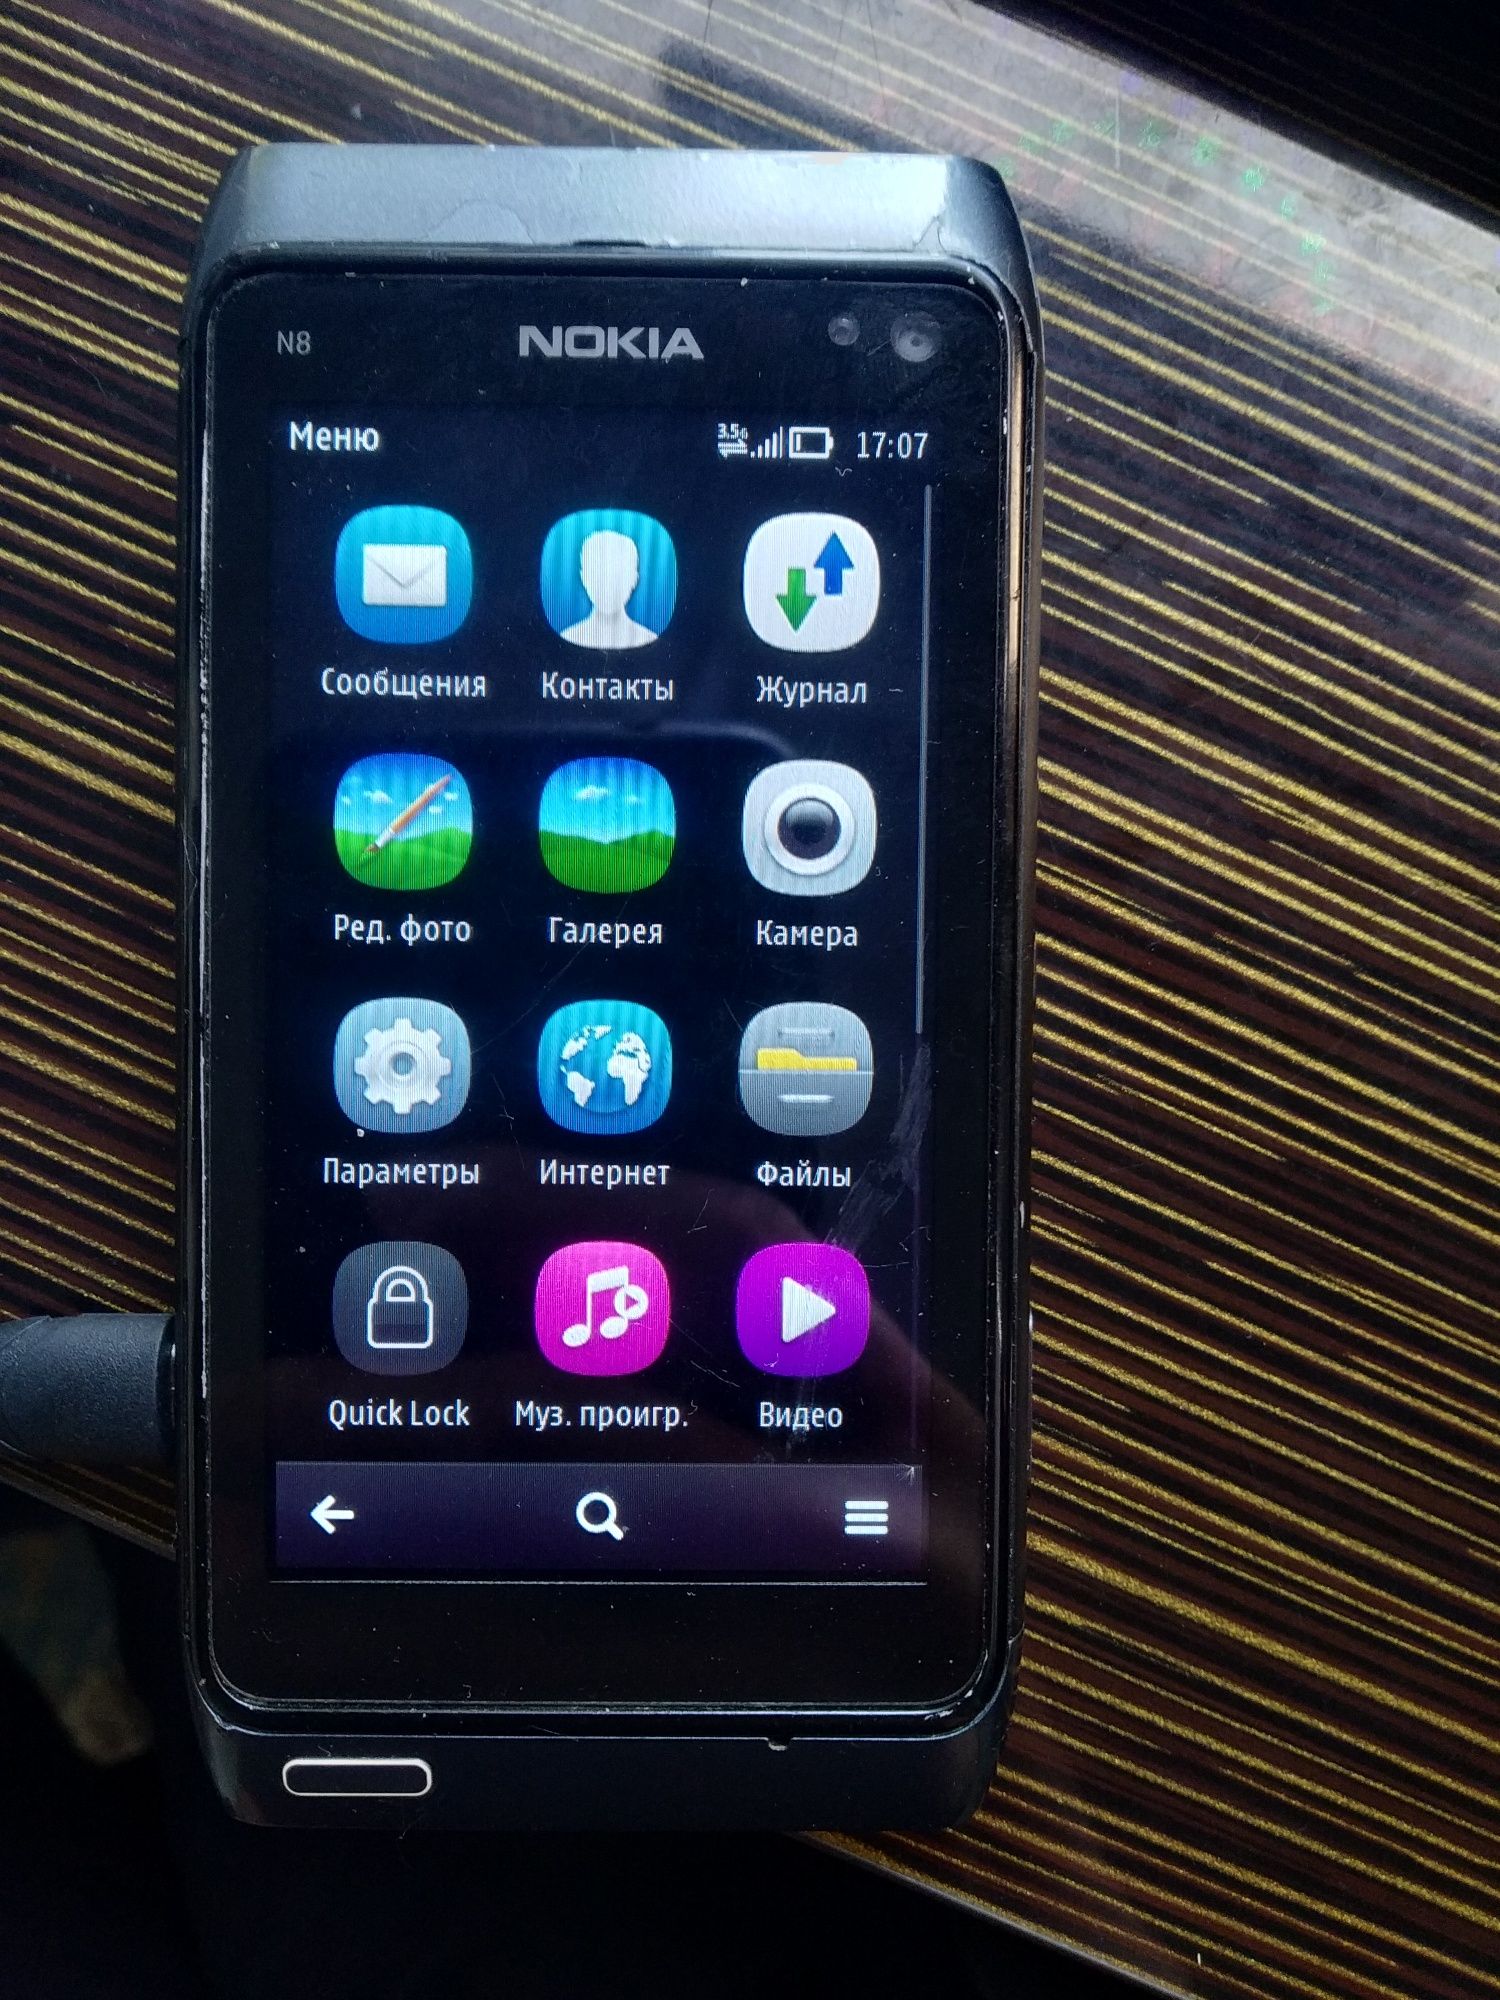 NokiaN8 telefonajoyib